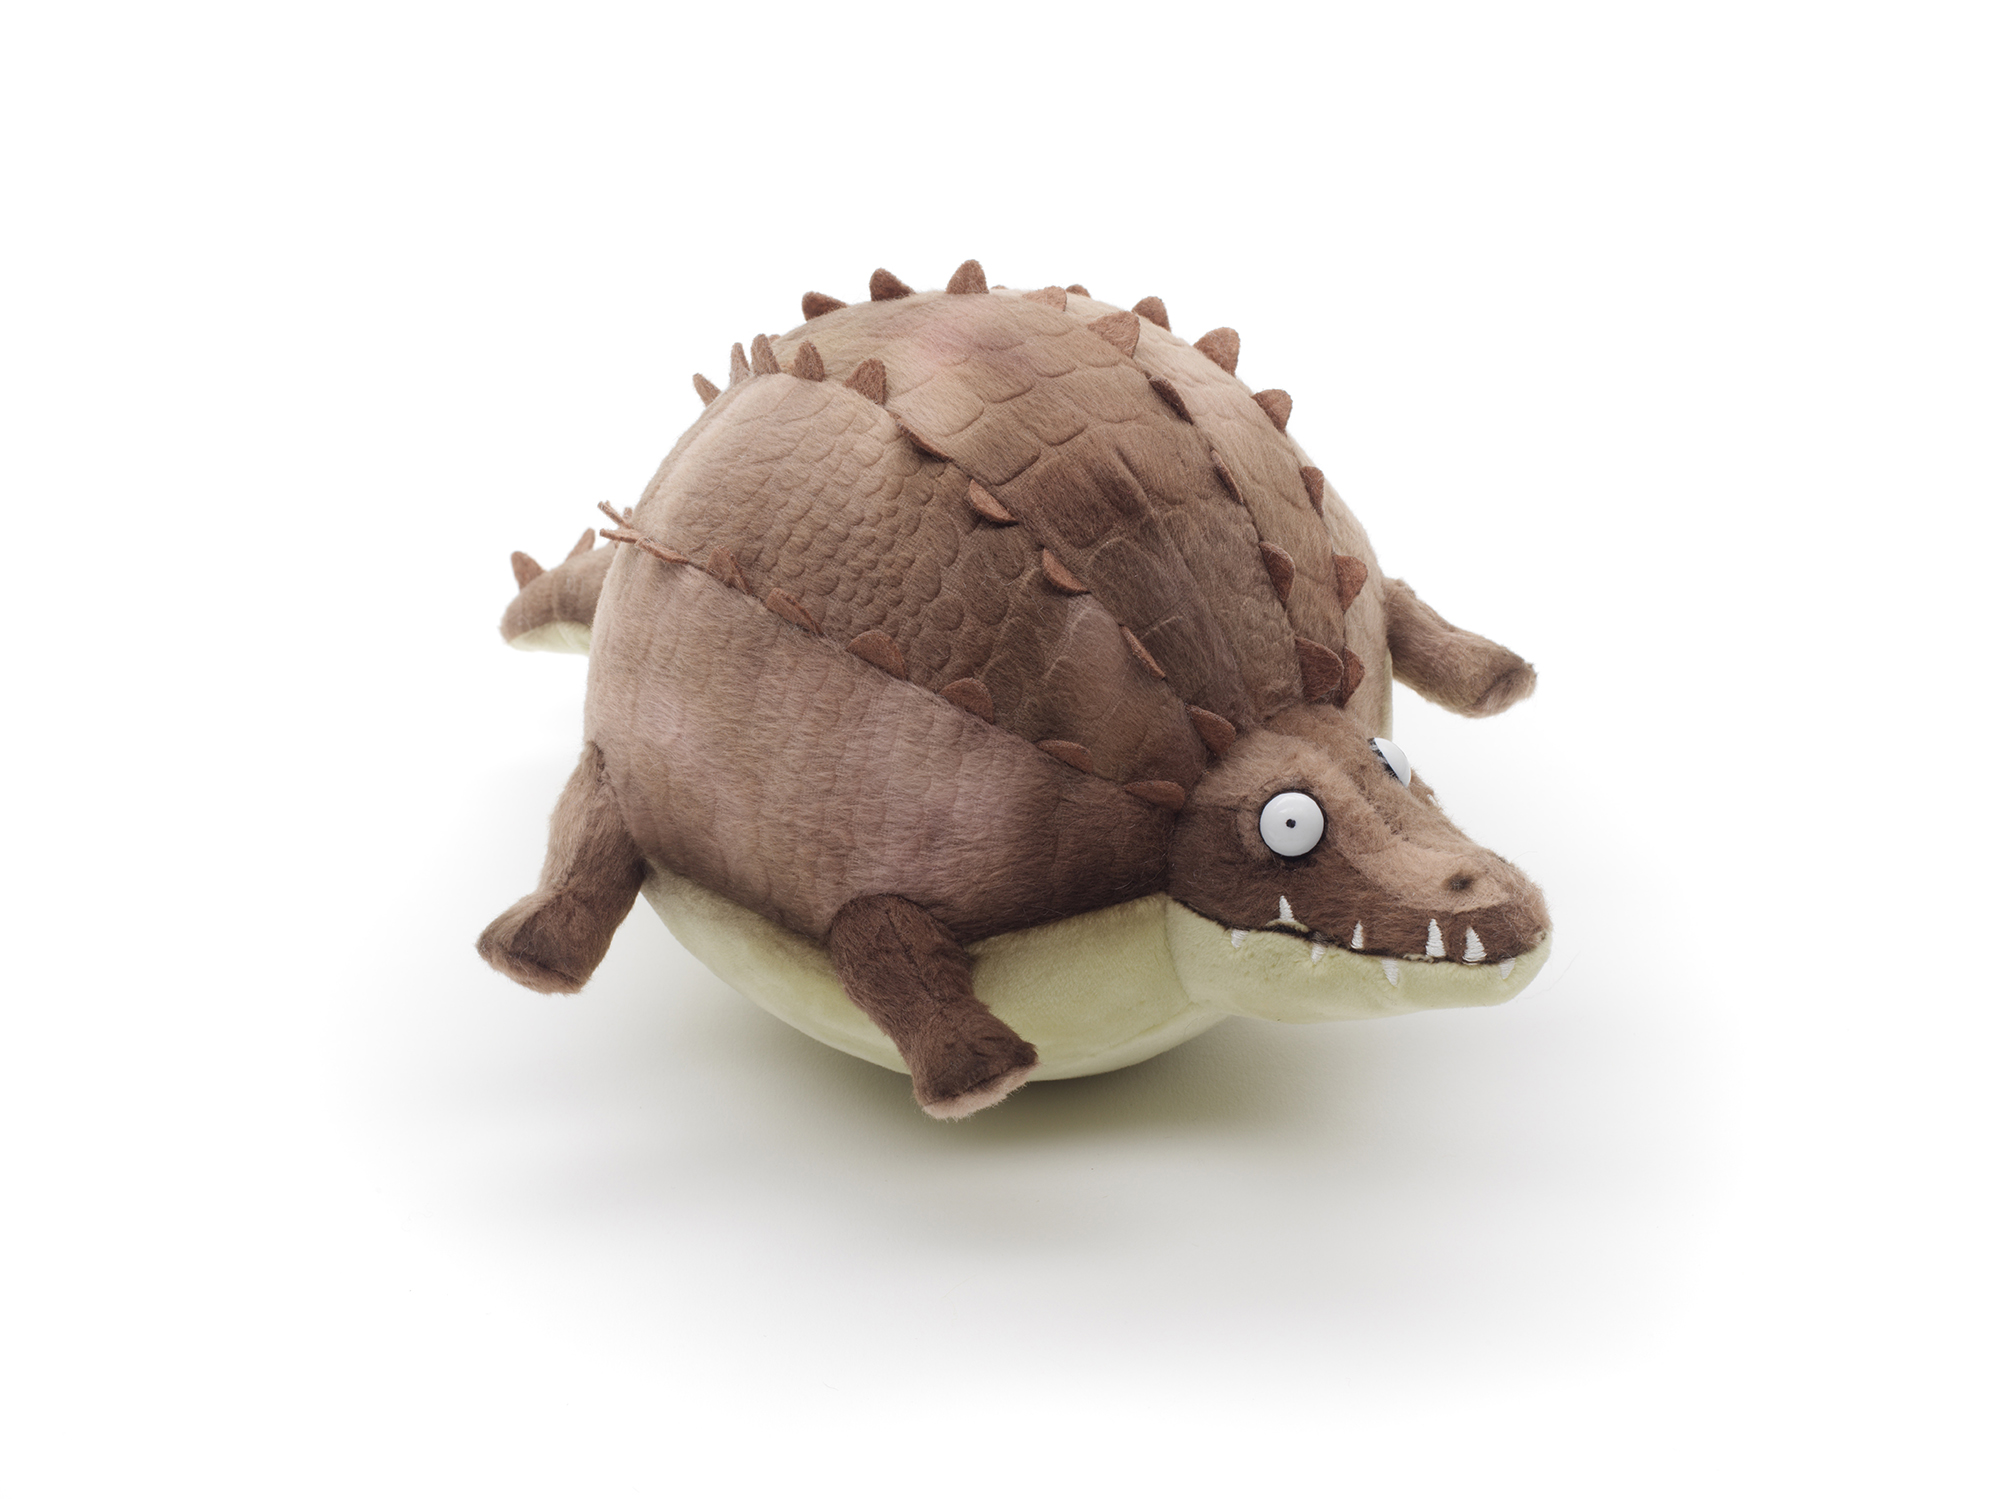 ROLLIN' WILD  -  Krokodil  -  27 cm (Länge)  -  Plüschtier von Uni-Toys